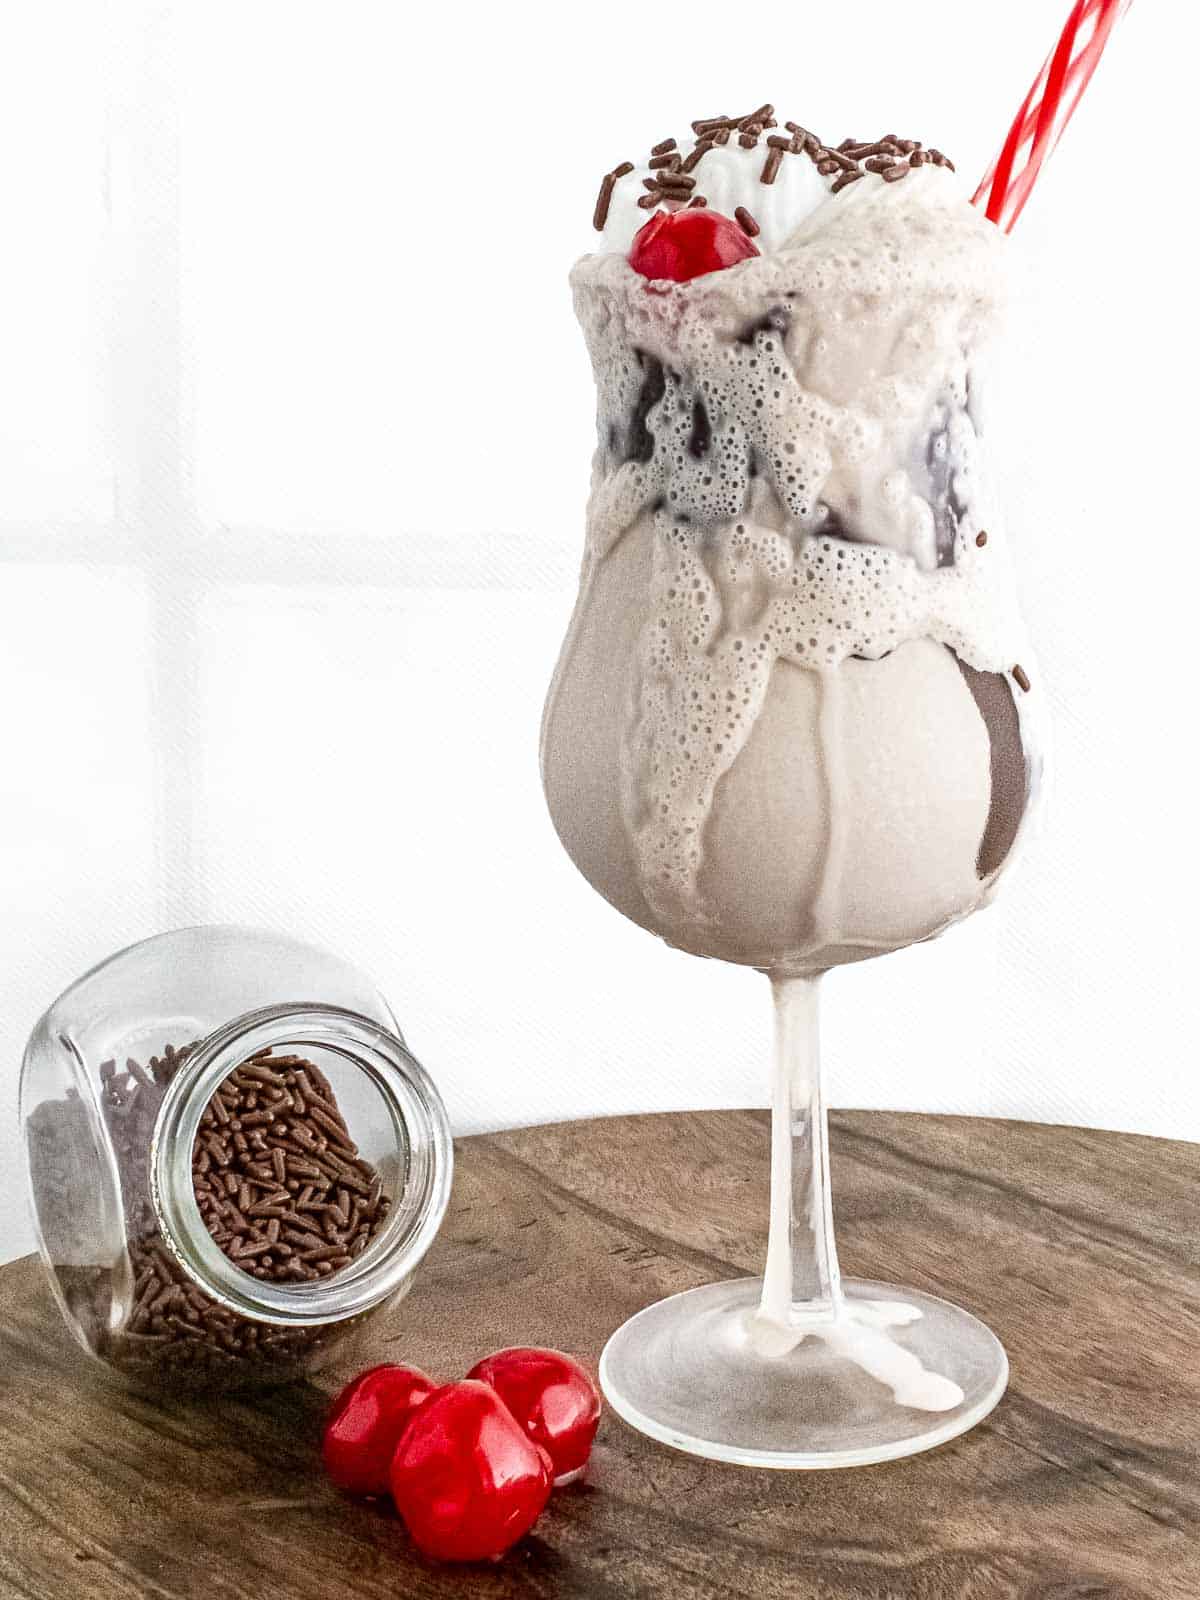 mocktail displayed with jar of sprinkles and three cherries